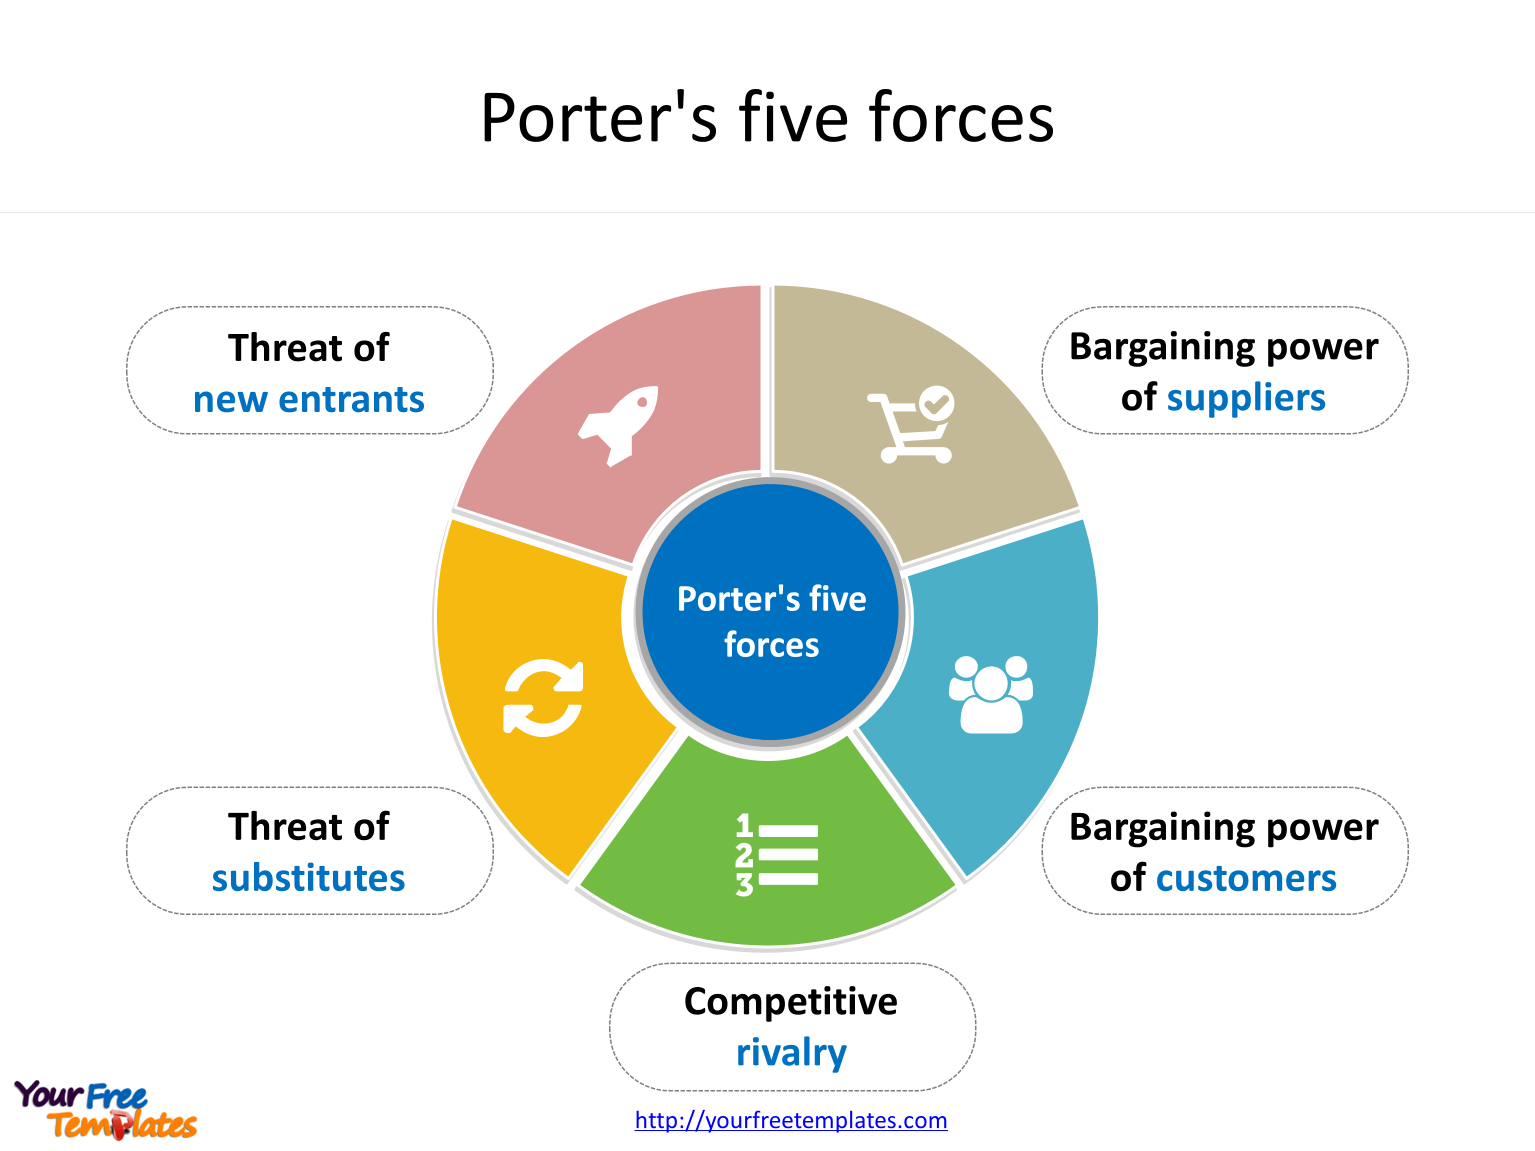 Porter’s five forces diagram